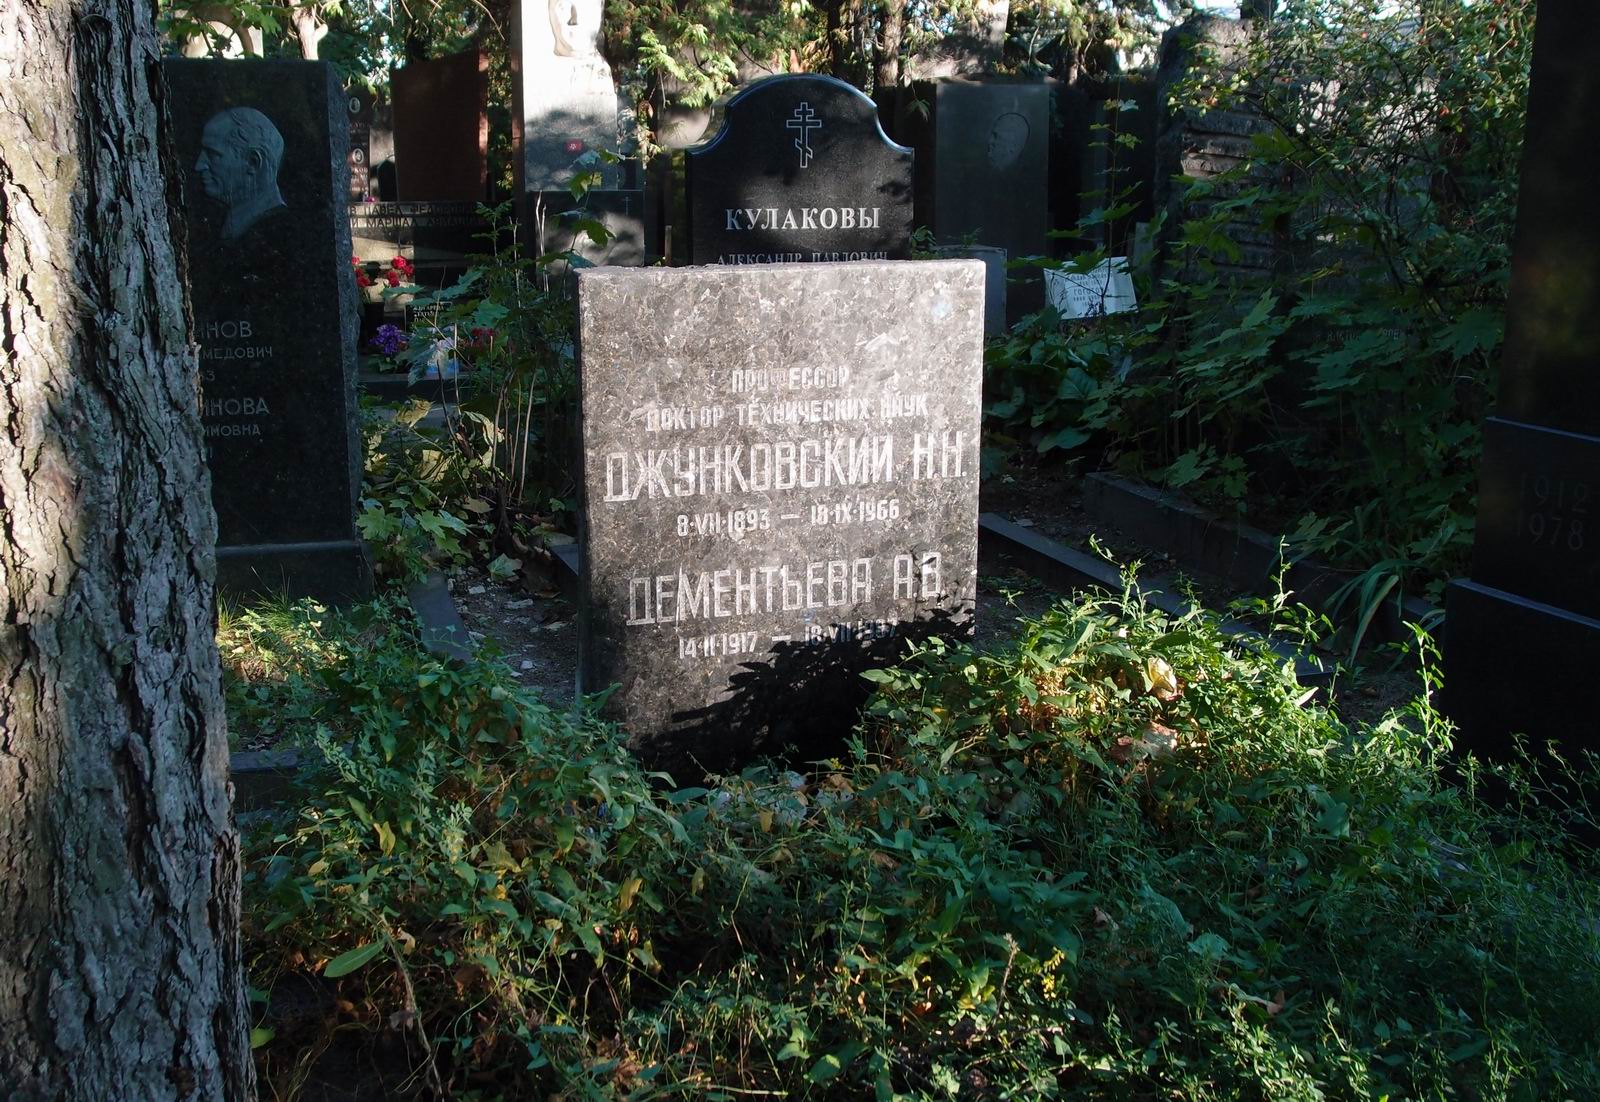 Памятник на могиле Джунковского Н.Н. (1893-1966), на Новодевичьем кладбище (8-36-2).